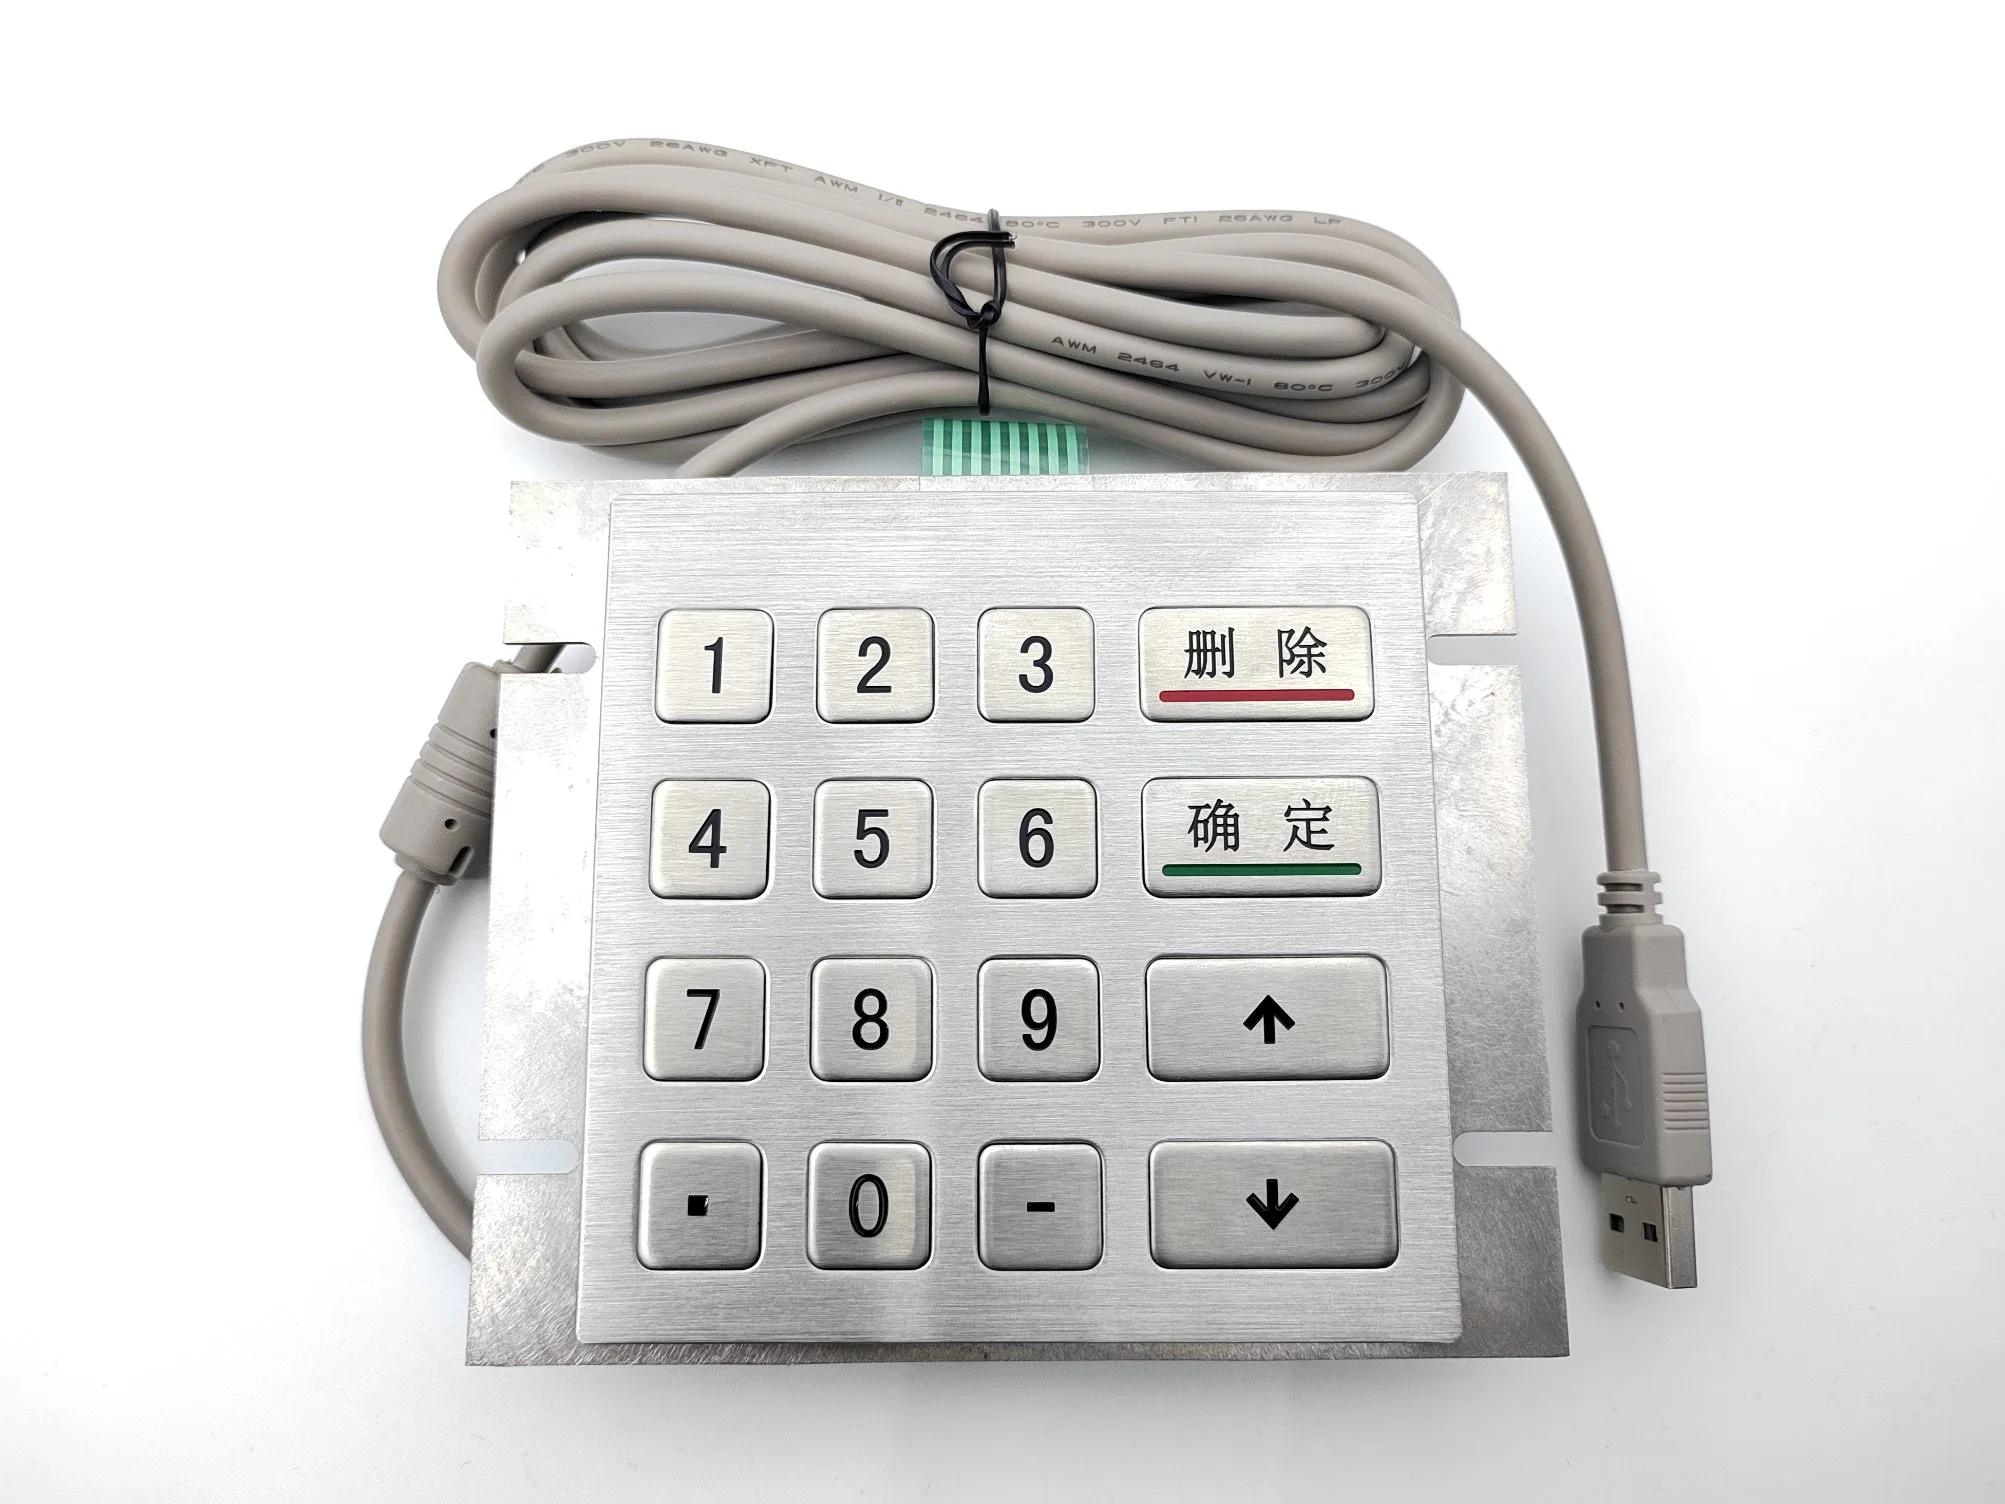 16 Keys Waterproof Metal Keypad with Optional Interface Numeric Metal Keyboard